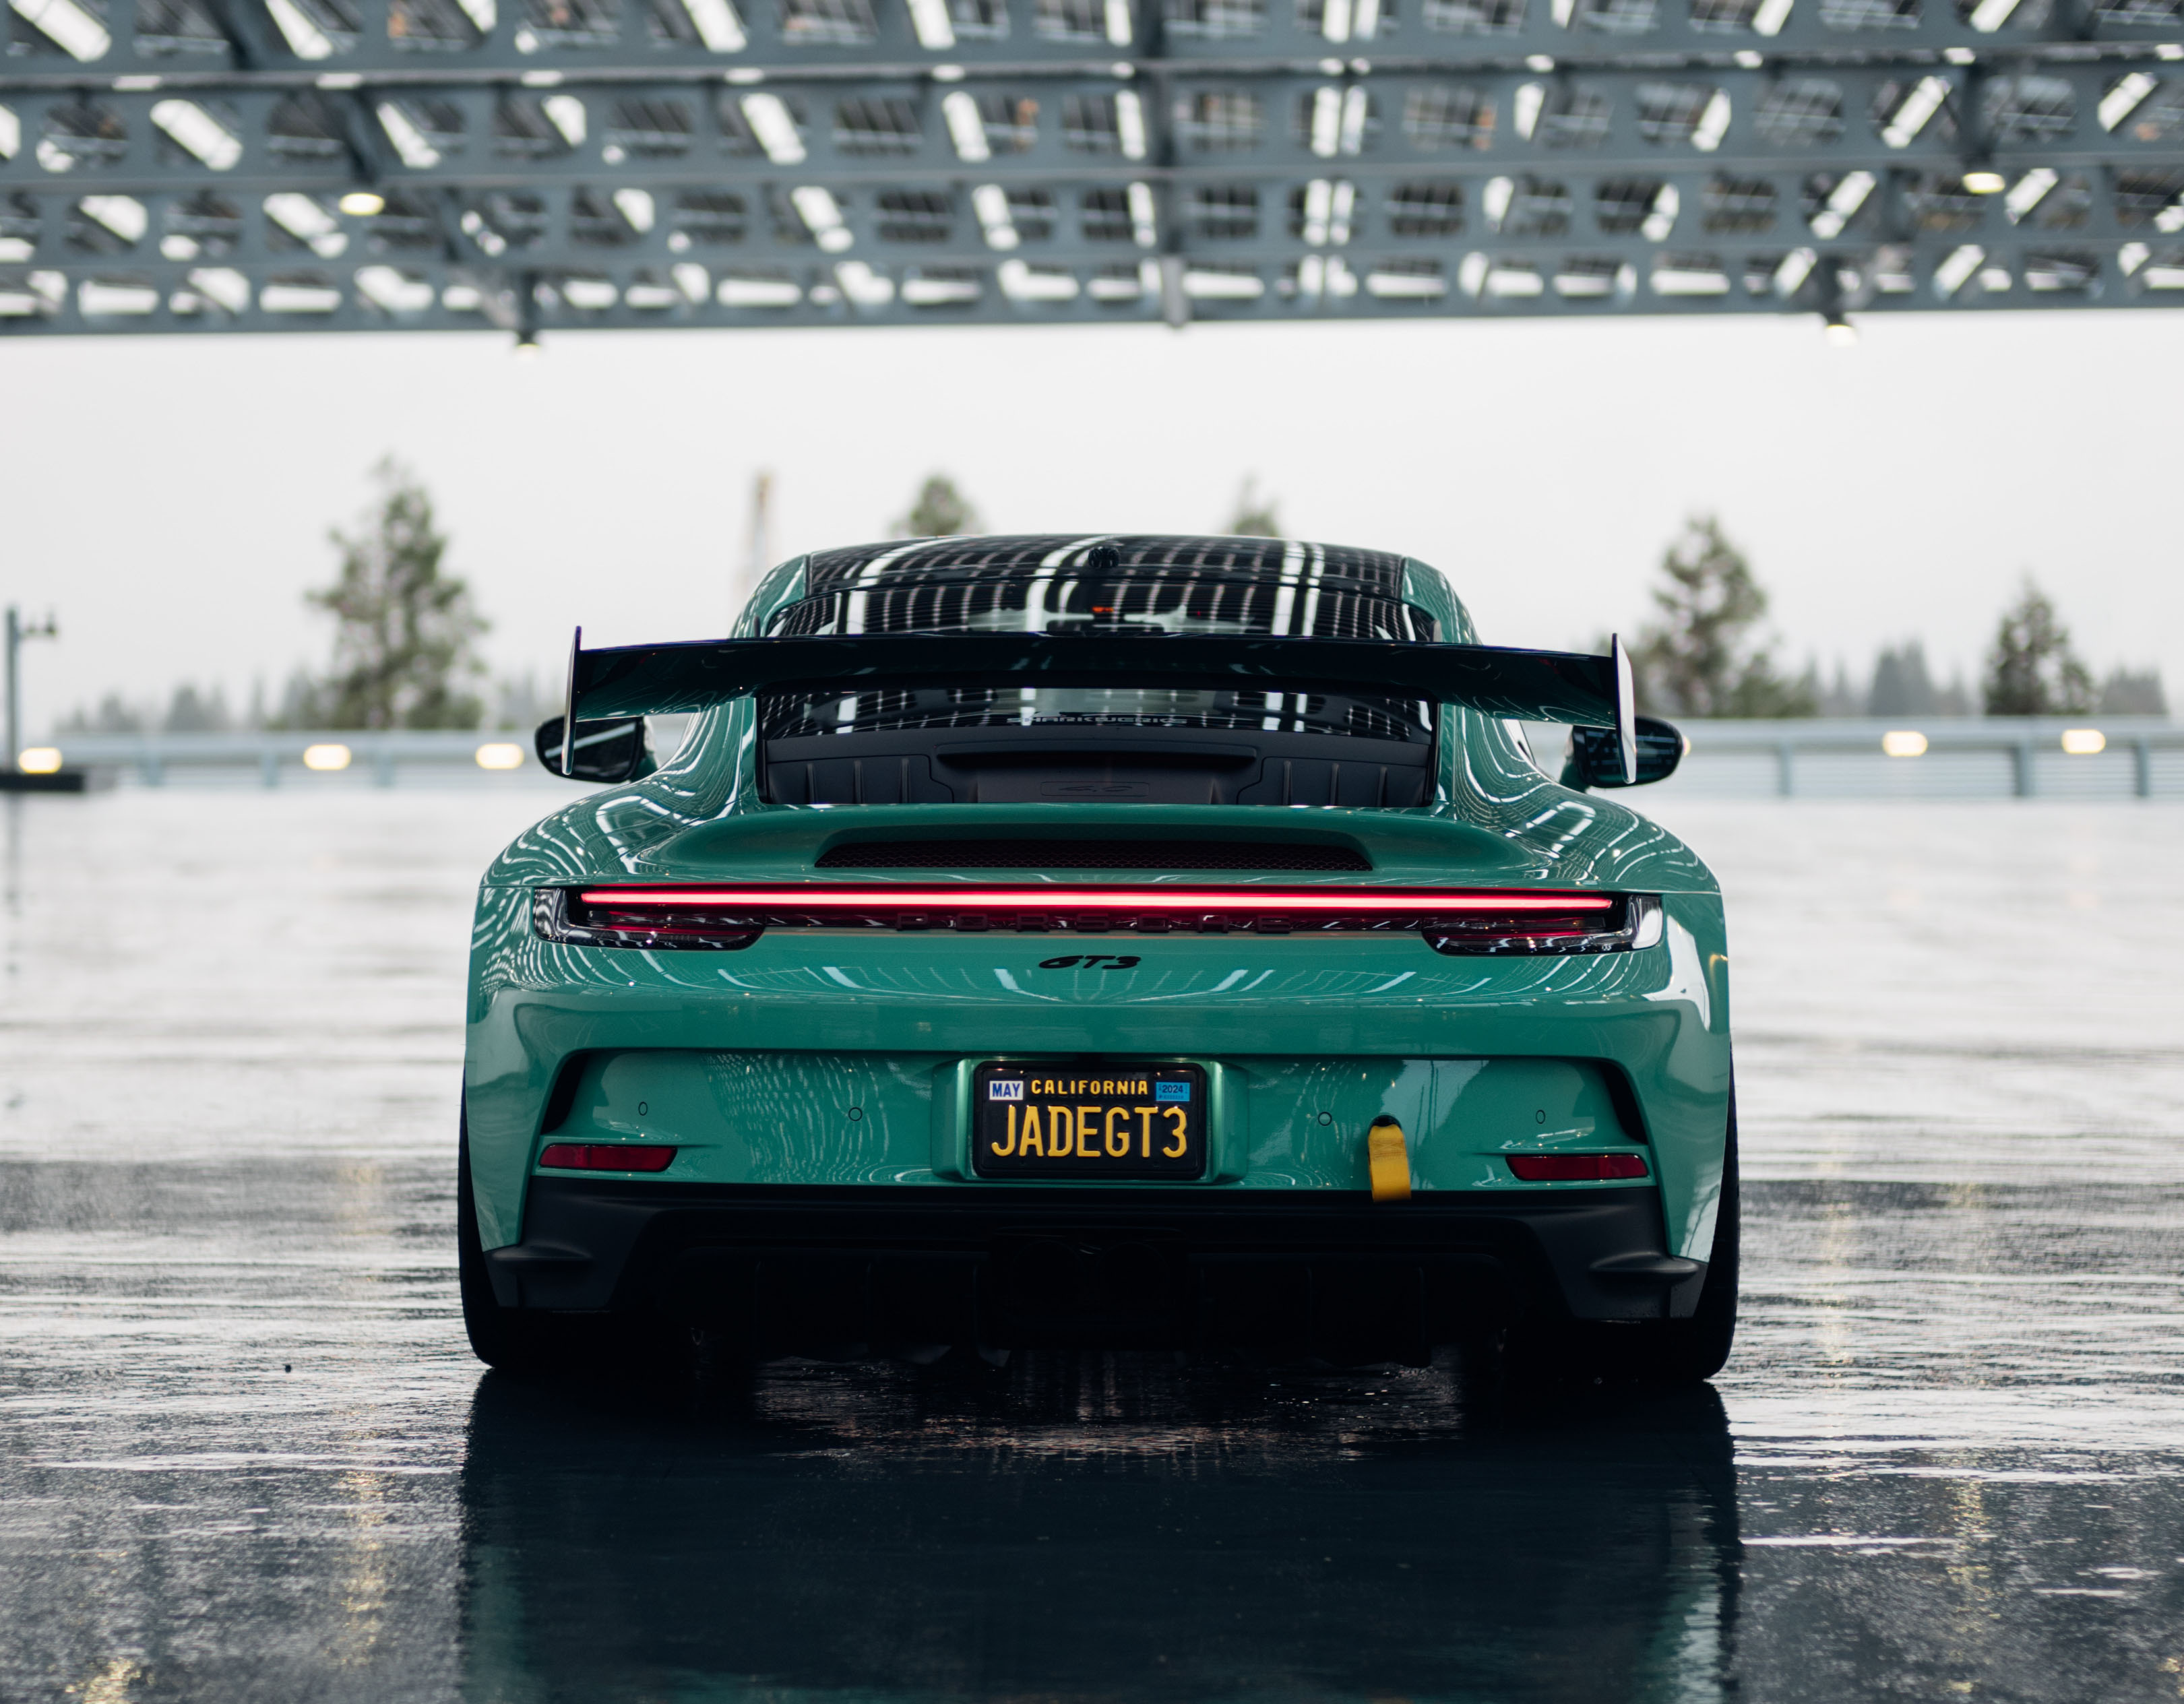 Green Porsche 911 GT3 in garage on rainy day